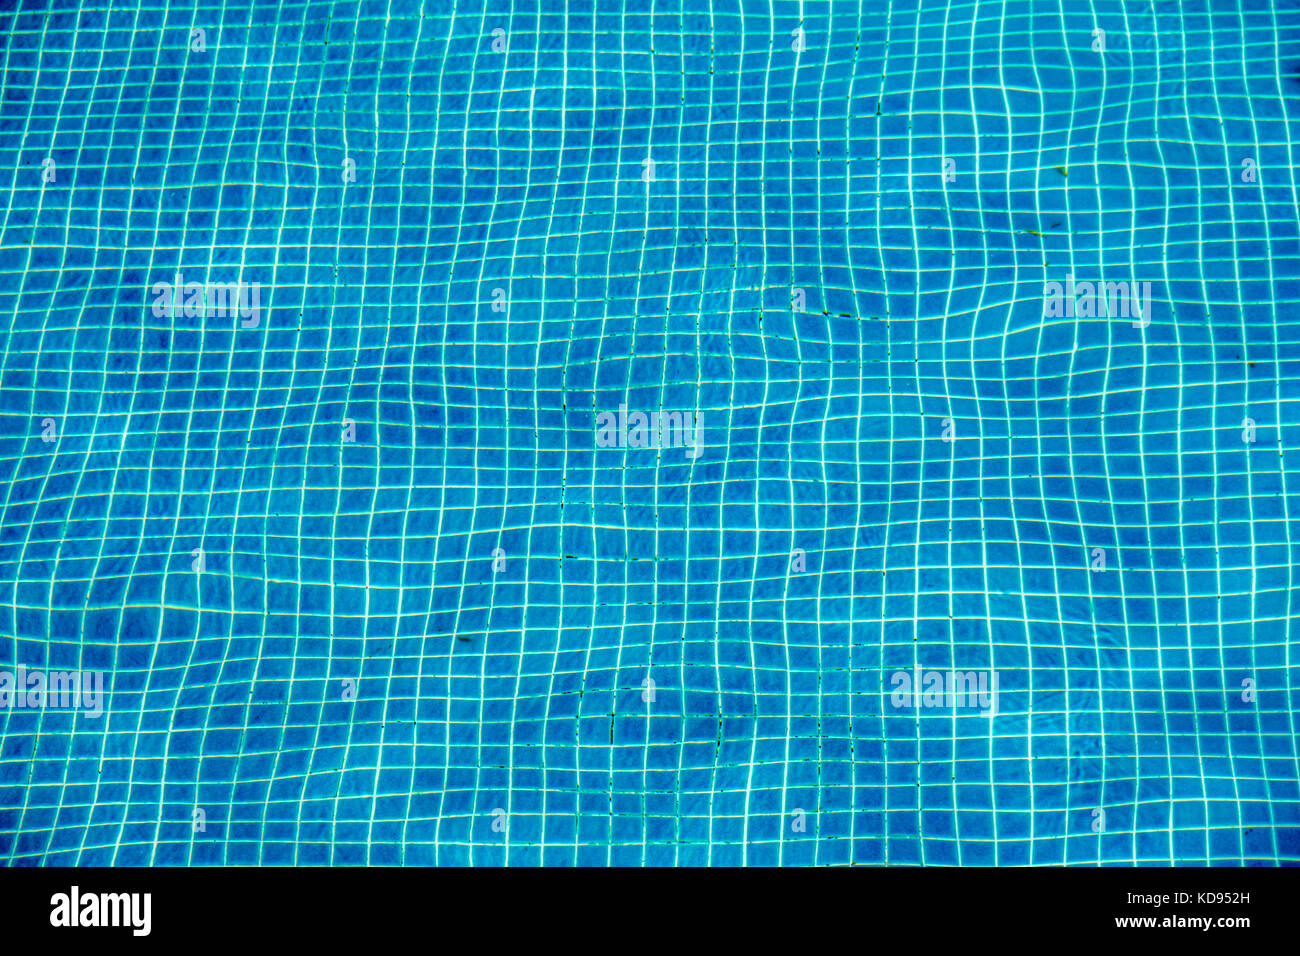 Dans la mosaïque de carreaux de céramique bleu piscine, seamless texture Banque D'Images